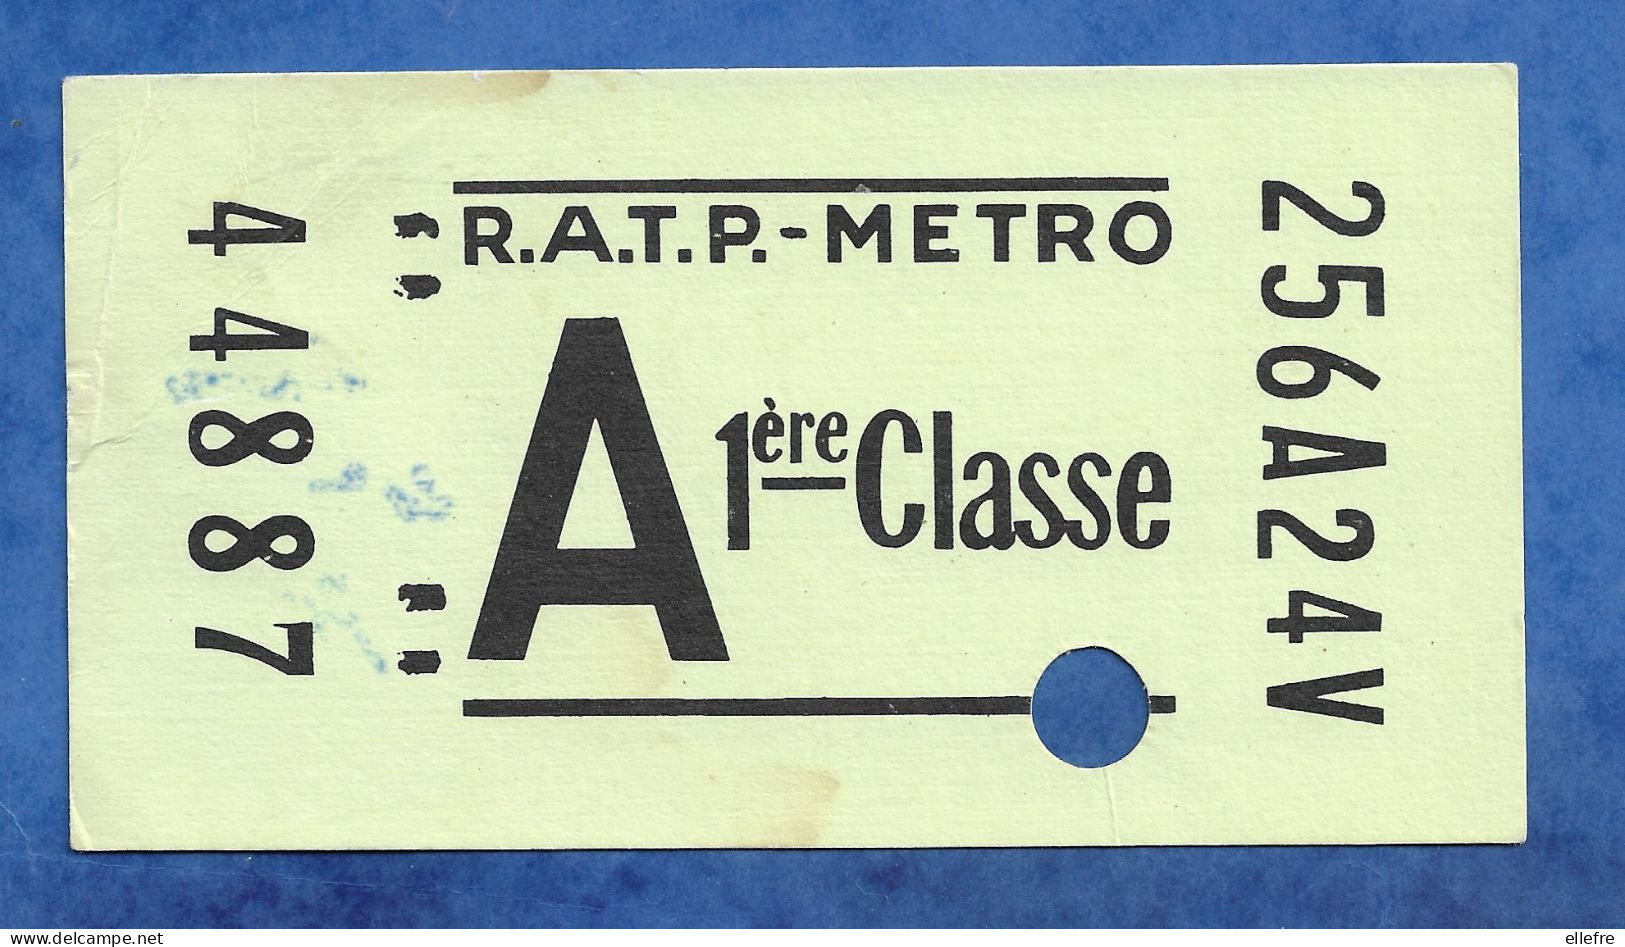 CARTE POSTALE ANNEES 1960 1970 EN FORME TICKET METRO GEANT 1 Ere Classe RATP AUTOBUS SERIE SHOPPING 30 PUBLISTAR PARIS - Metropolitana